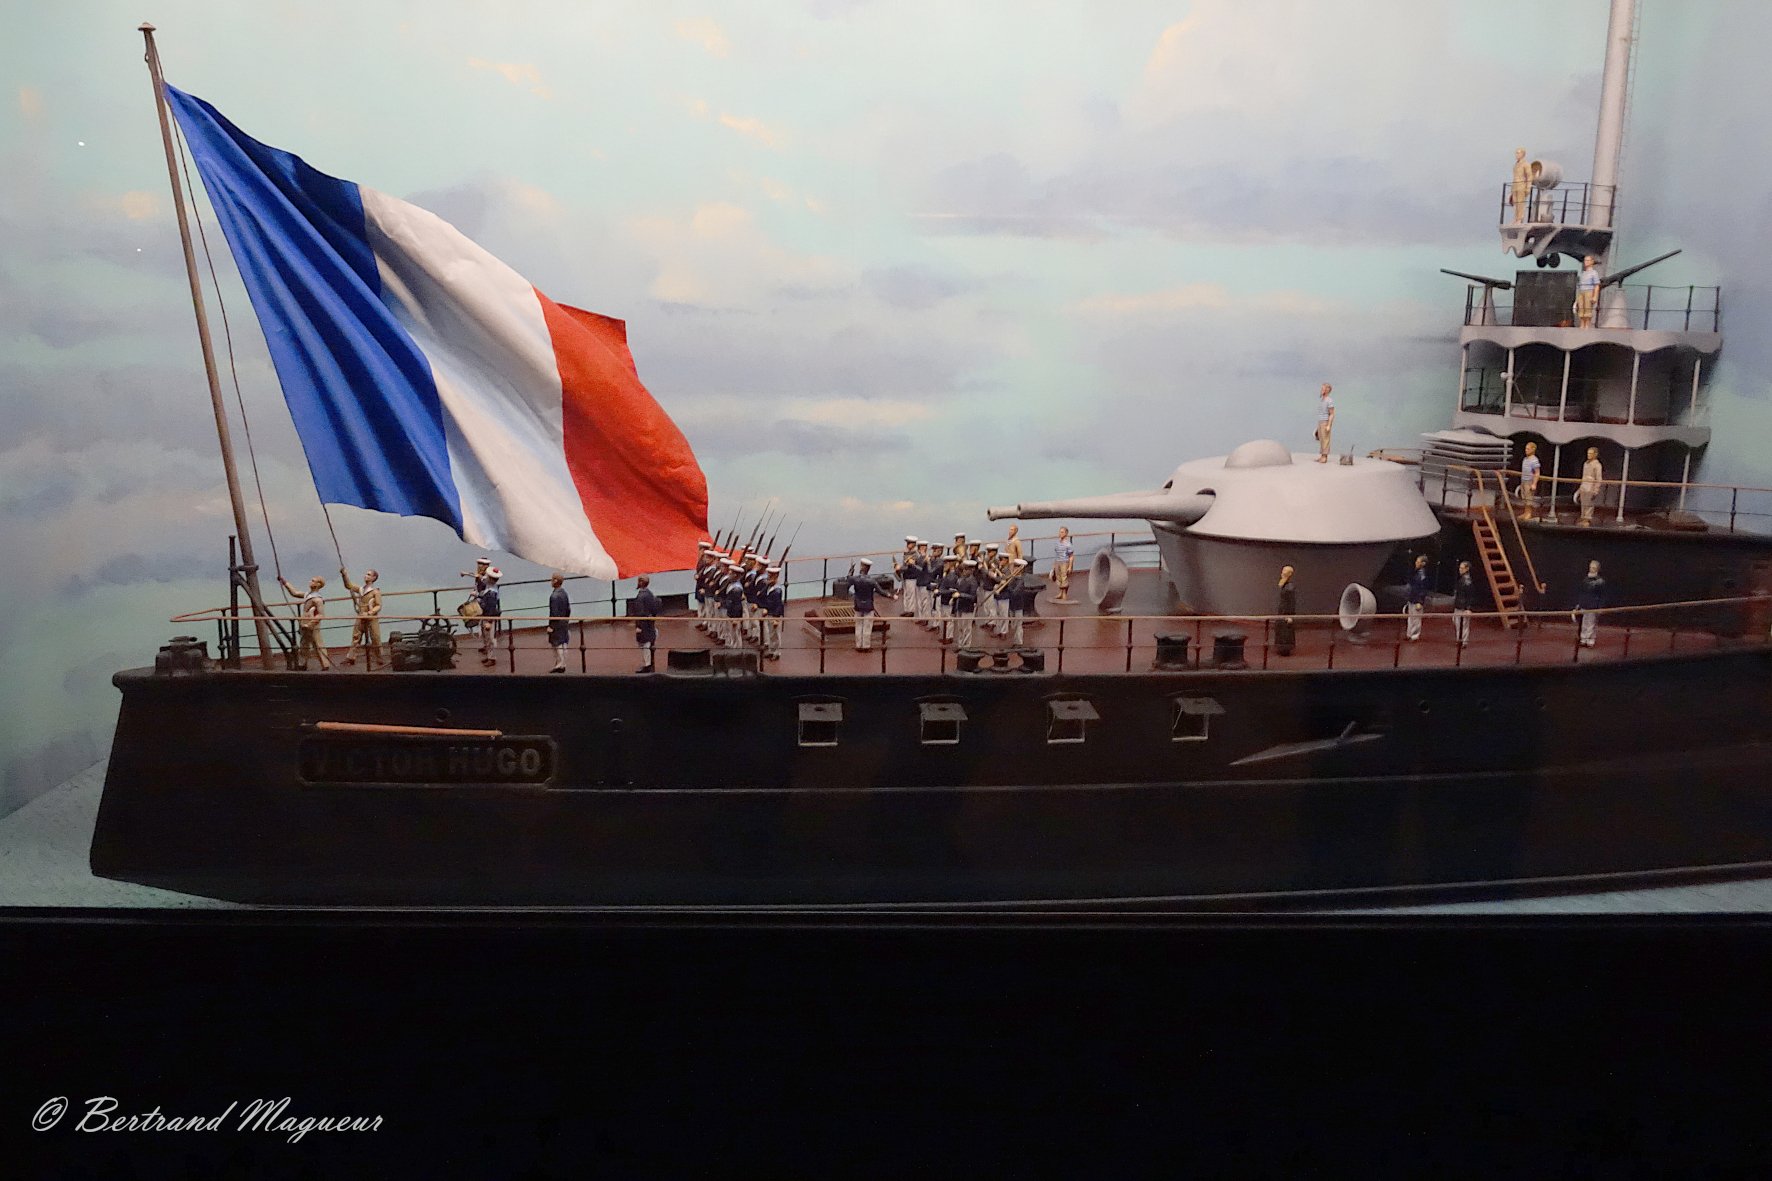 chaillot - Musée de la Marine de Paris - Palais de Chaillot - Page 6 GCgIJvIW0AAIerC?format=jpg&name=large